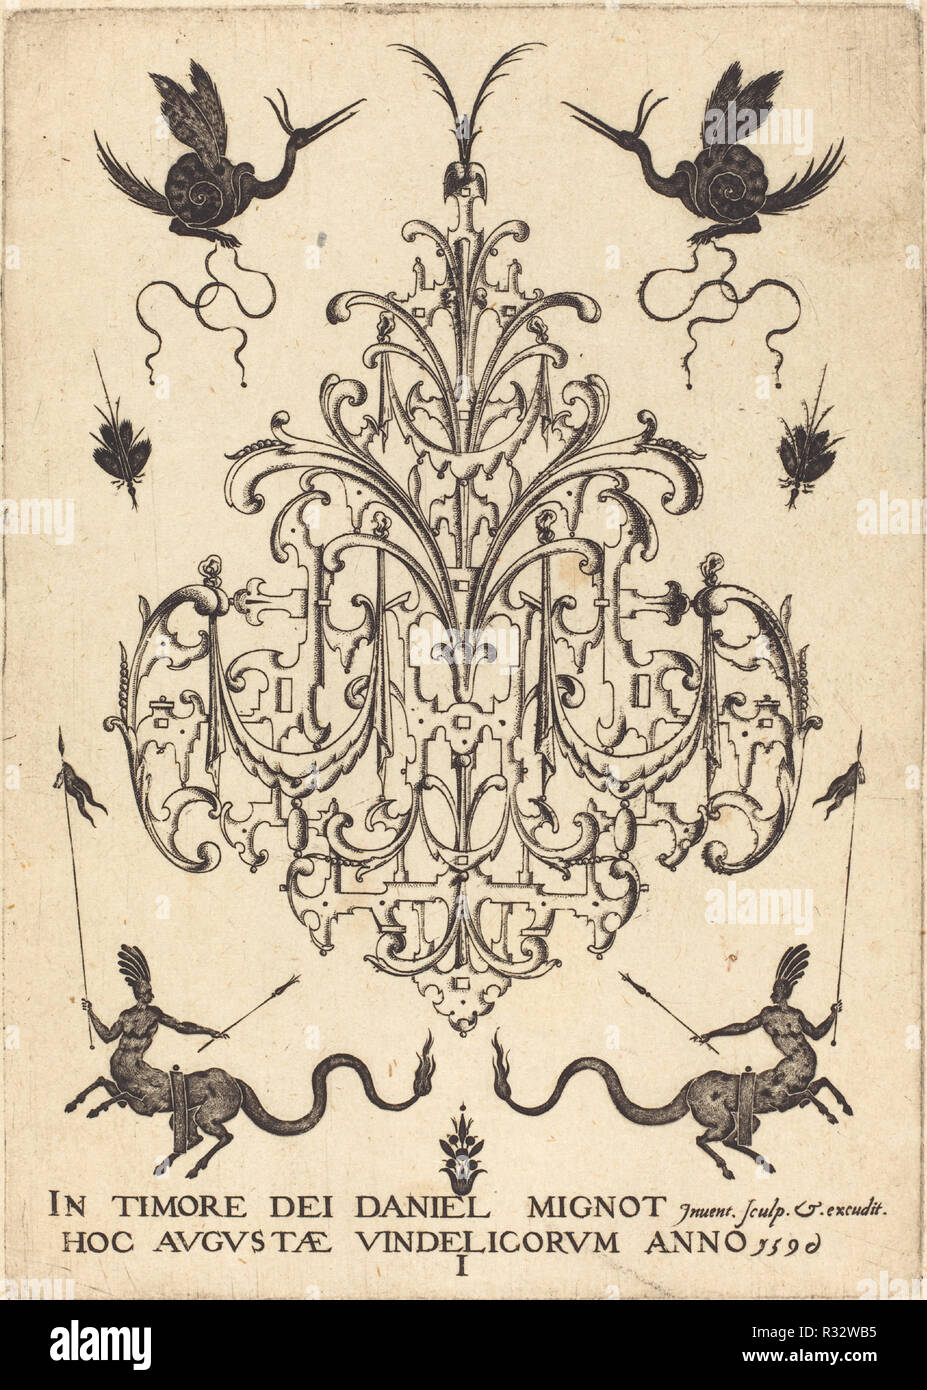 Title-Page: Brosche, wie eine Schnecke Tiere, Zentauren mit Banner unten. Stand: 1596. Medium: Gravur. Museum: Nationalgalerie, Washington DC. Autor: Daniel Mignot. Stockfoto